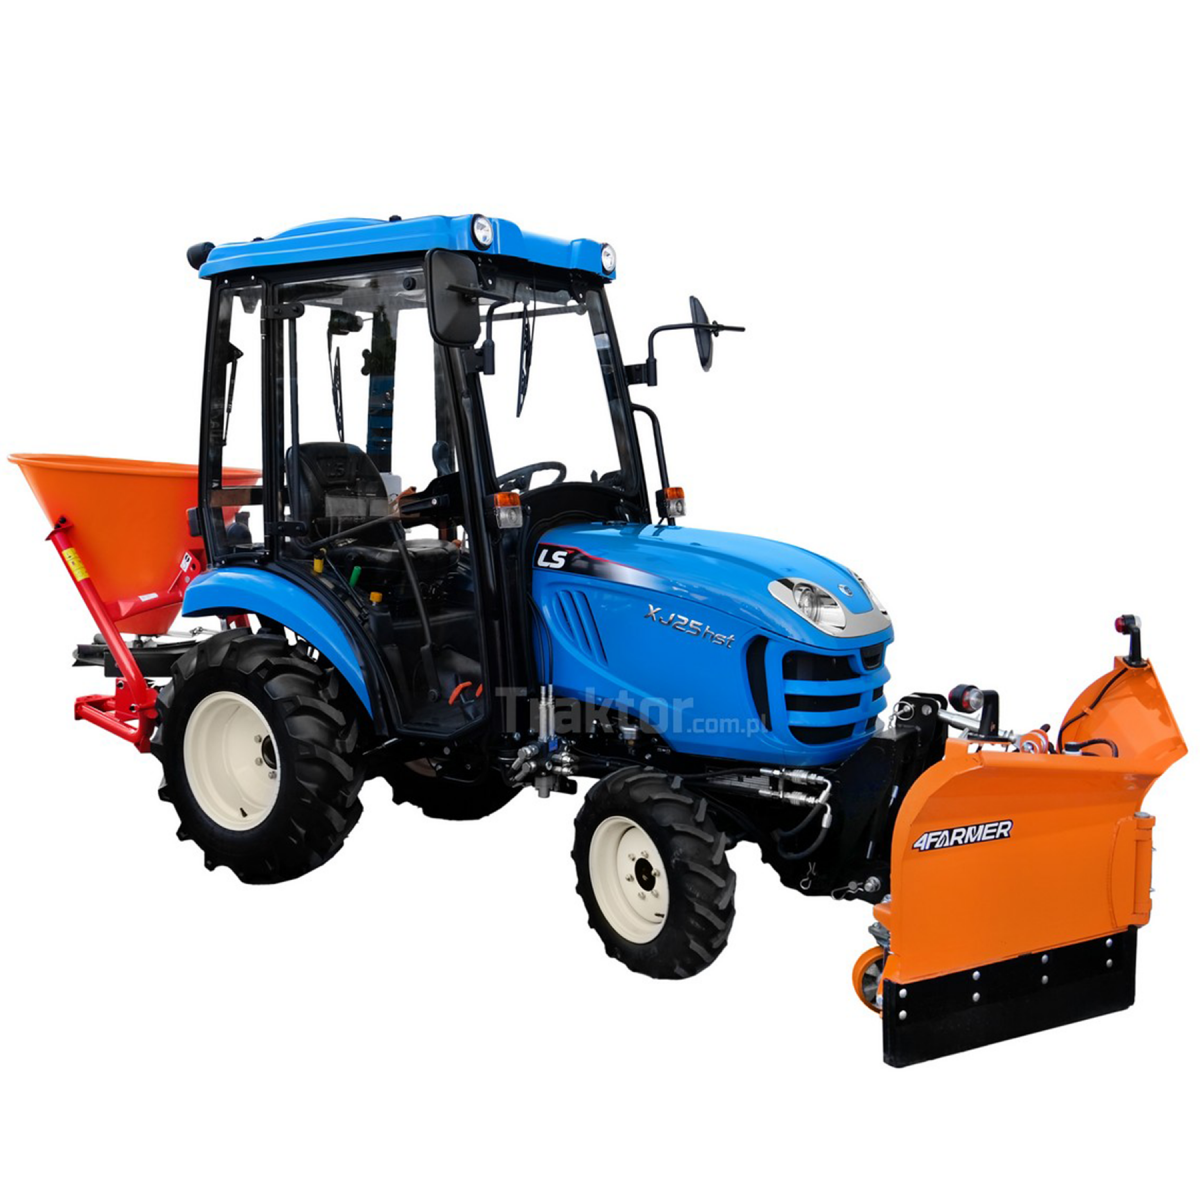 LS Tractor XJ25 HST 4x4 - 24.4 KM / CAB + pług do śniegu strzałkowy Vario 150 cm, hydrauliczny 4FARMER + posypywarka 200L Dexwal